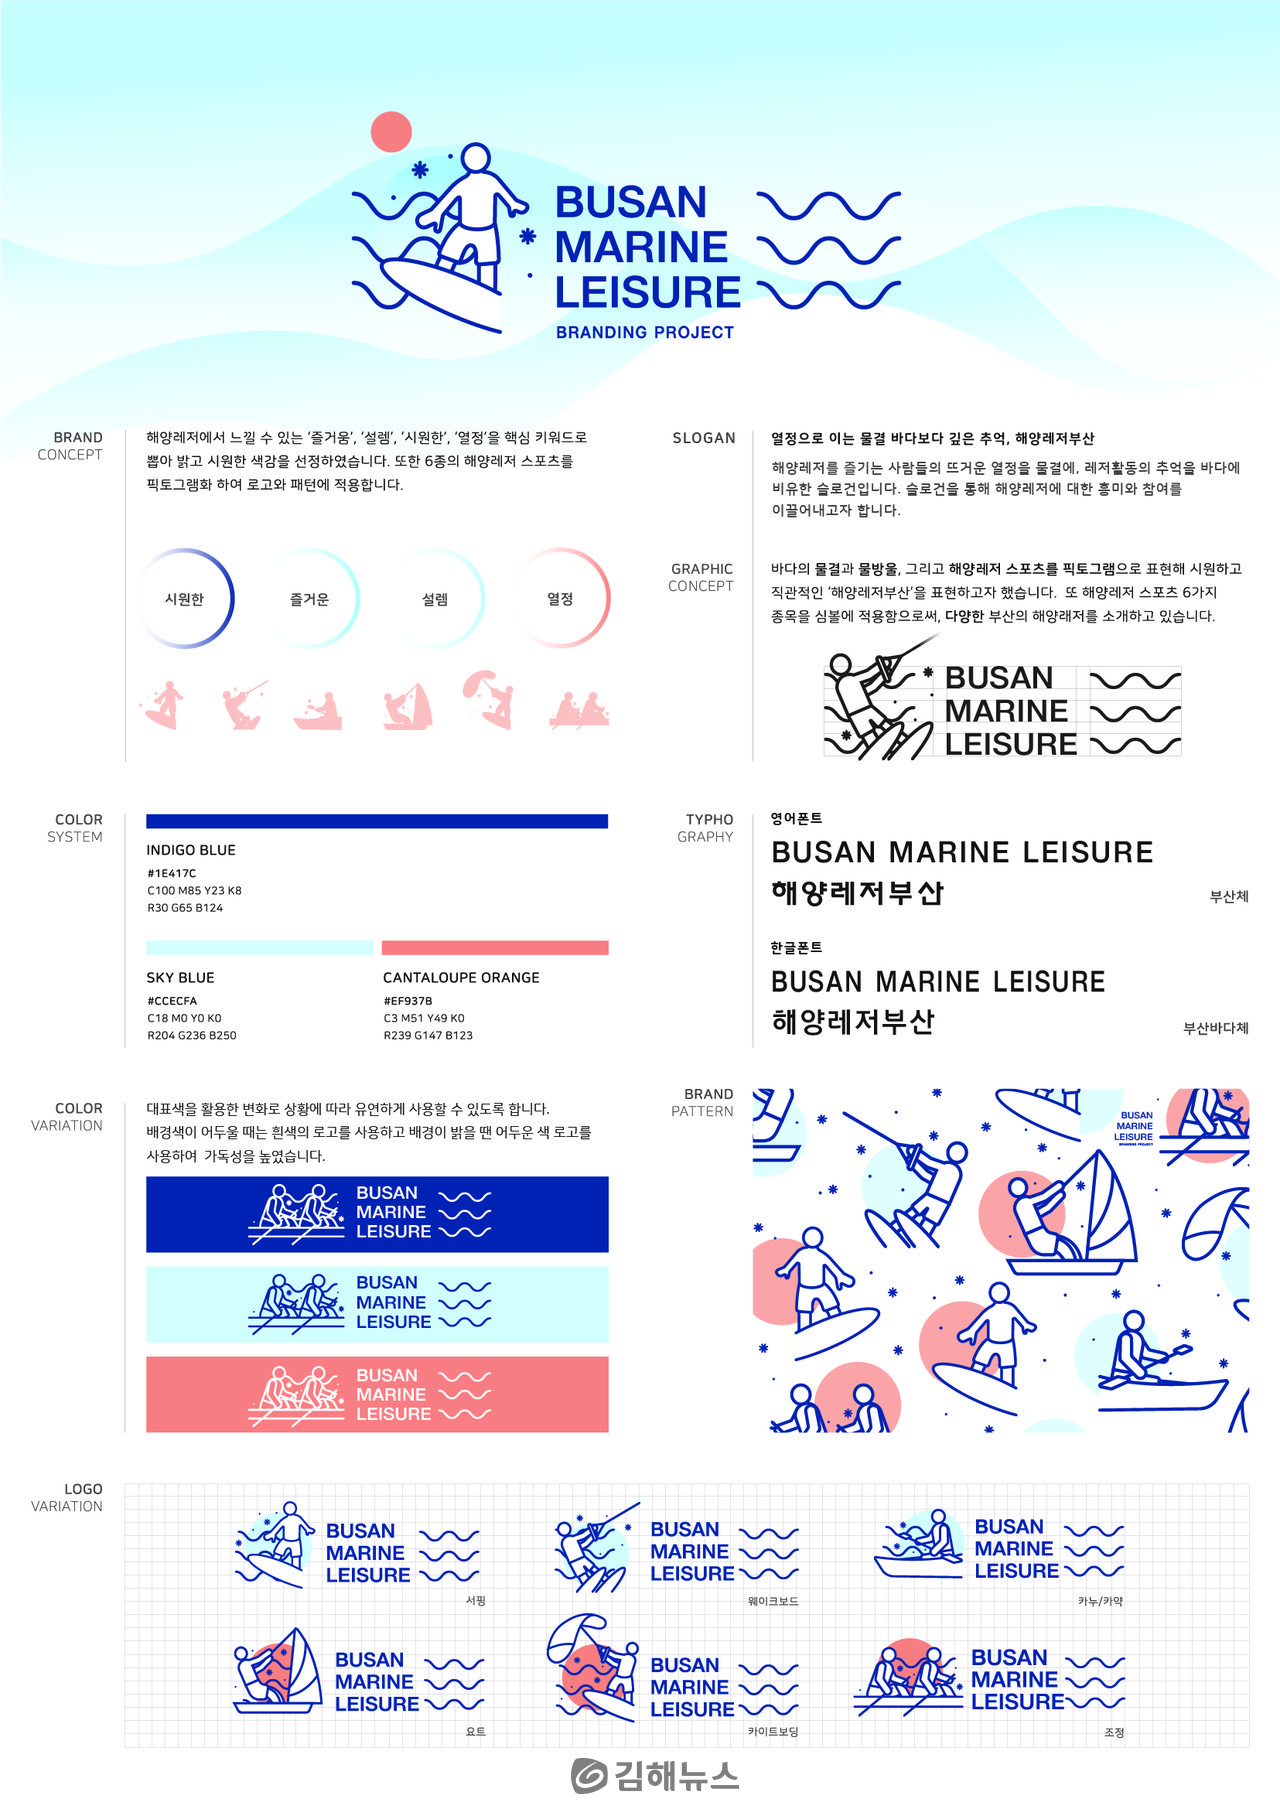 김영하 씨가 '2021 부산해양디자인어워드'의 '부산 해양레저 BI(Brand Identity) 및 슬로건 개발'에 제출한 디자인.